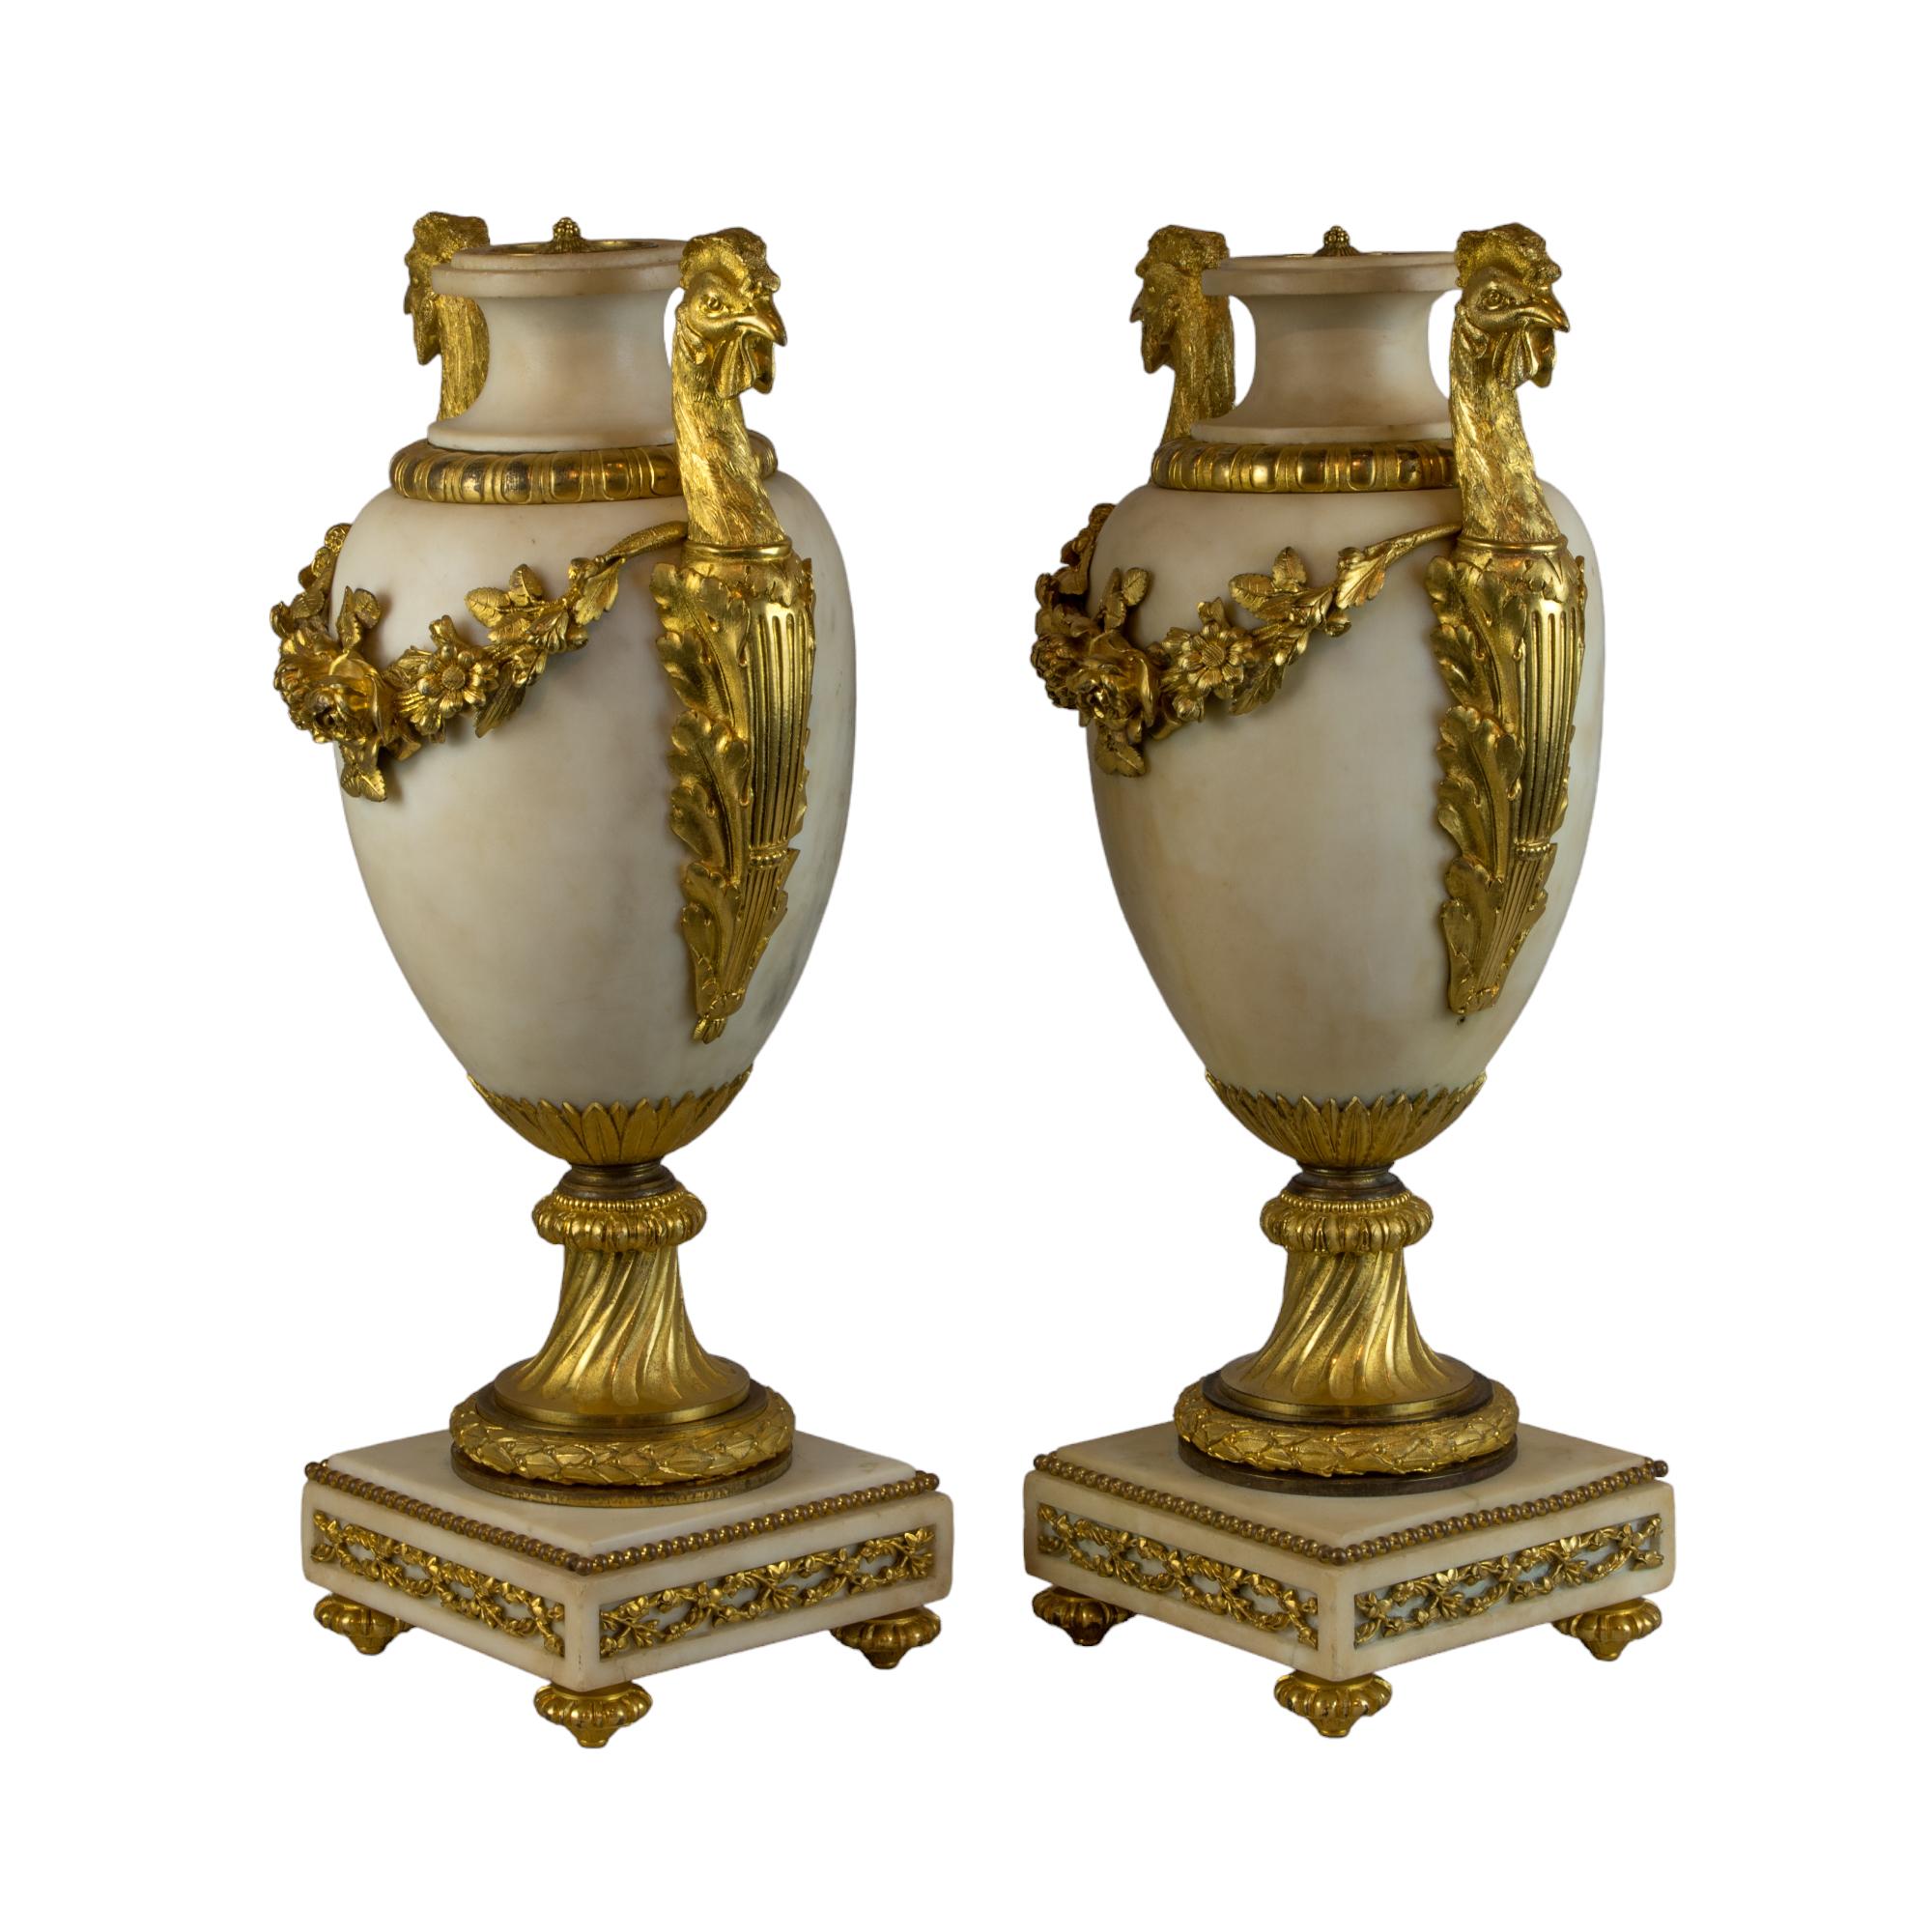 Paire d'urnes en marbre blanc de style Louis XVI, montées en bronze doré, incarnant le goût néoclassique du XIXe siècle avec un mélange harmonieux d'utilité et de grandeur. Chaque urne témoigne d'un savoir-faire exquis et présente un corps élégant